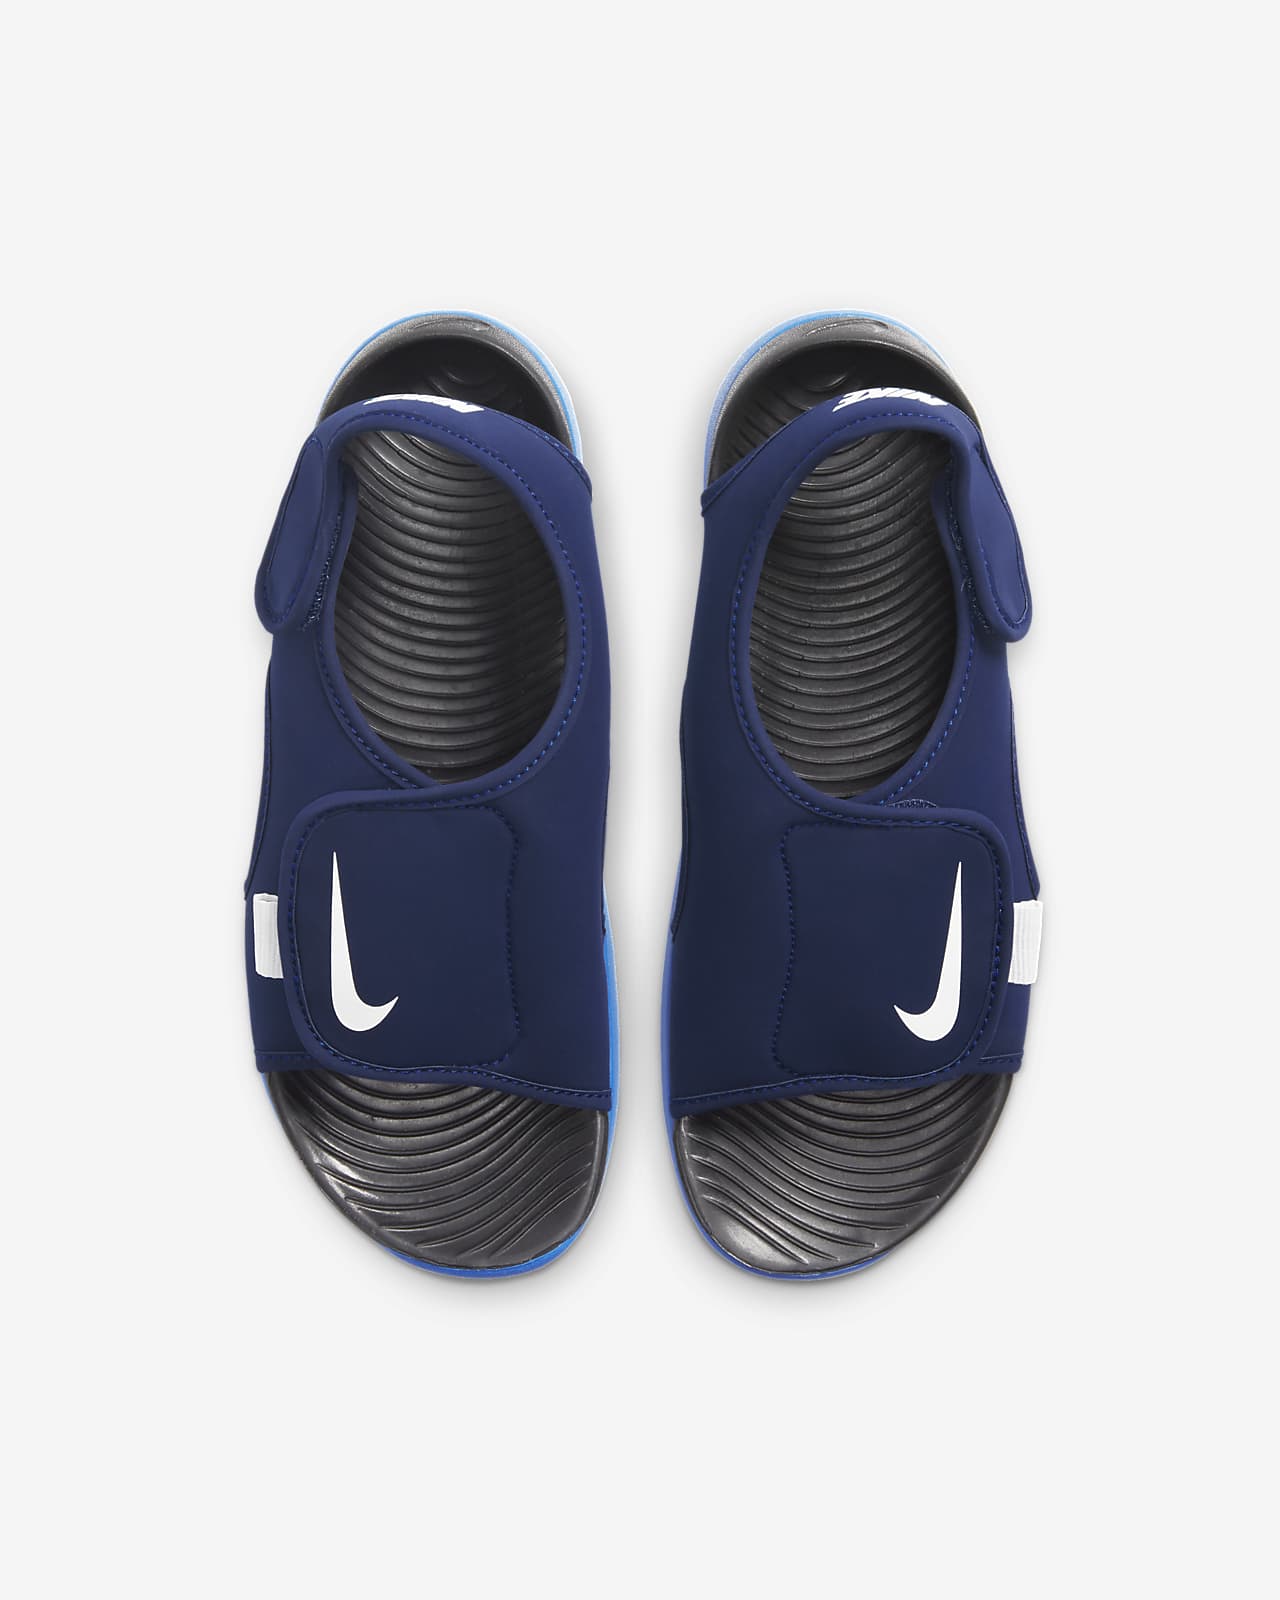 Nike Sunray Adjust V2 Little/Big Kids' Sandals | lupon.gov.ph